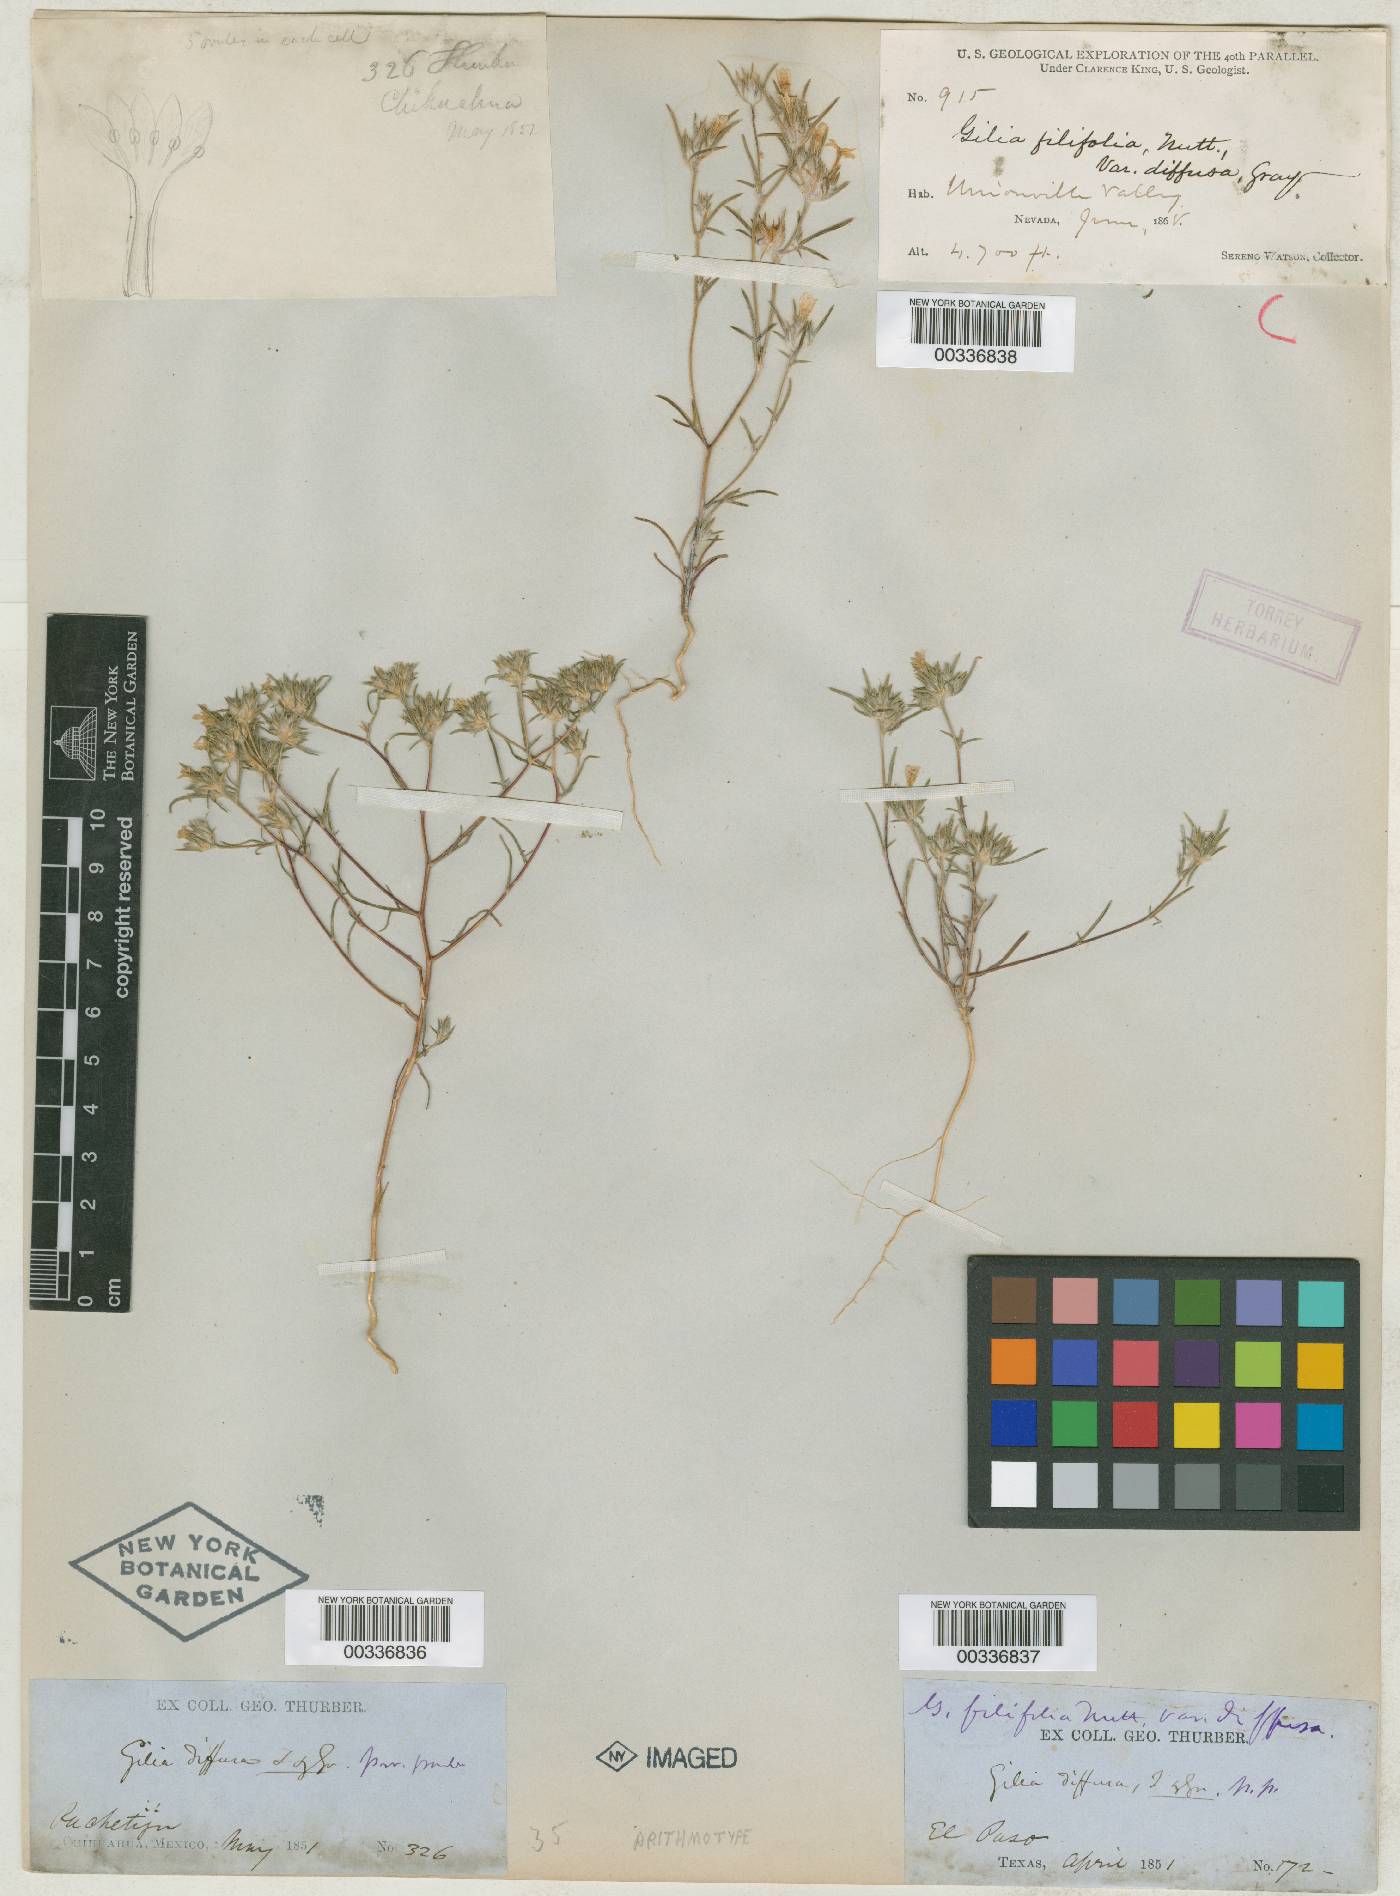 Gilia filifolia image